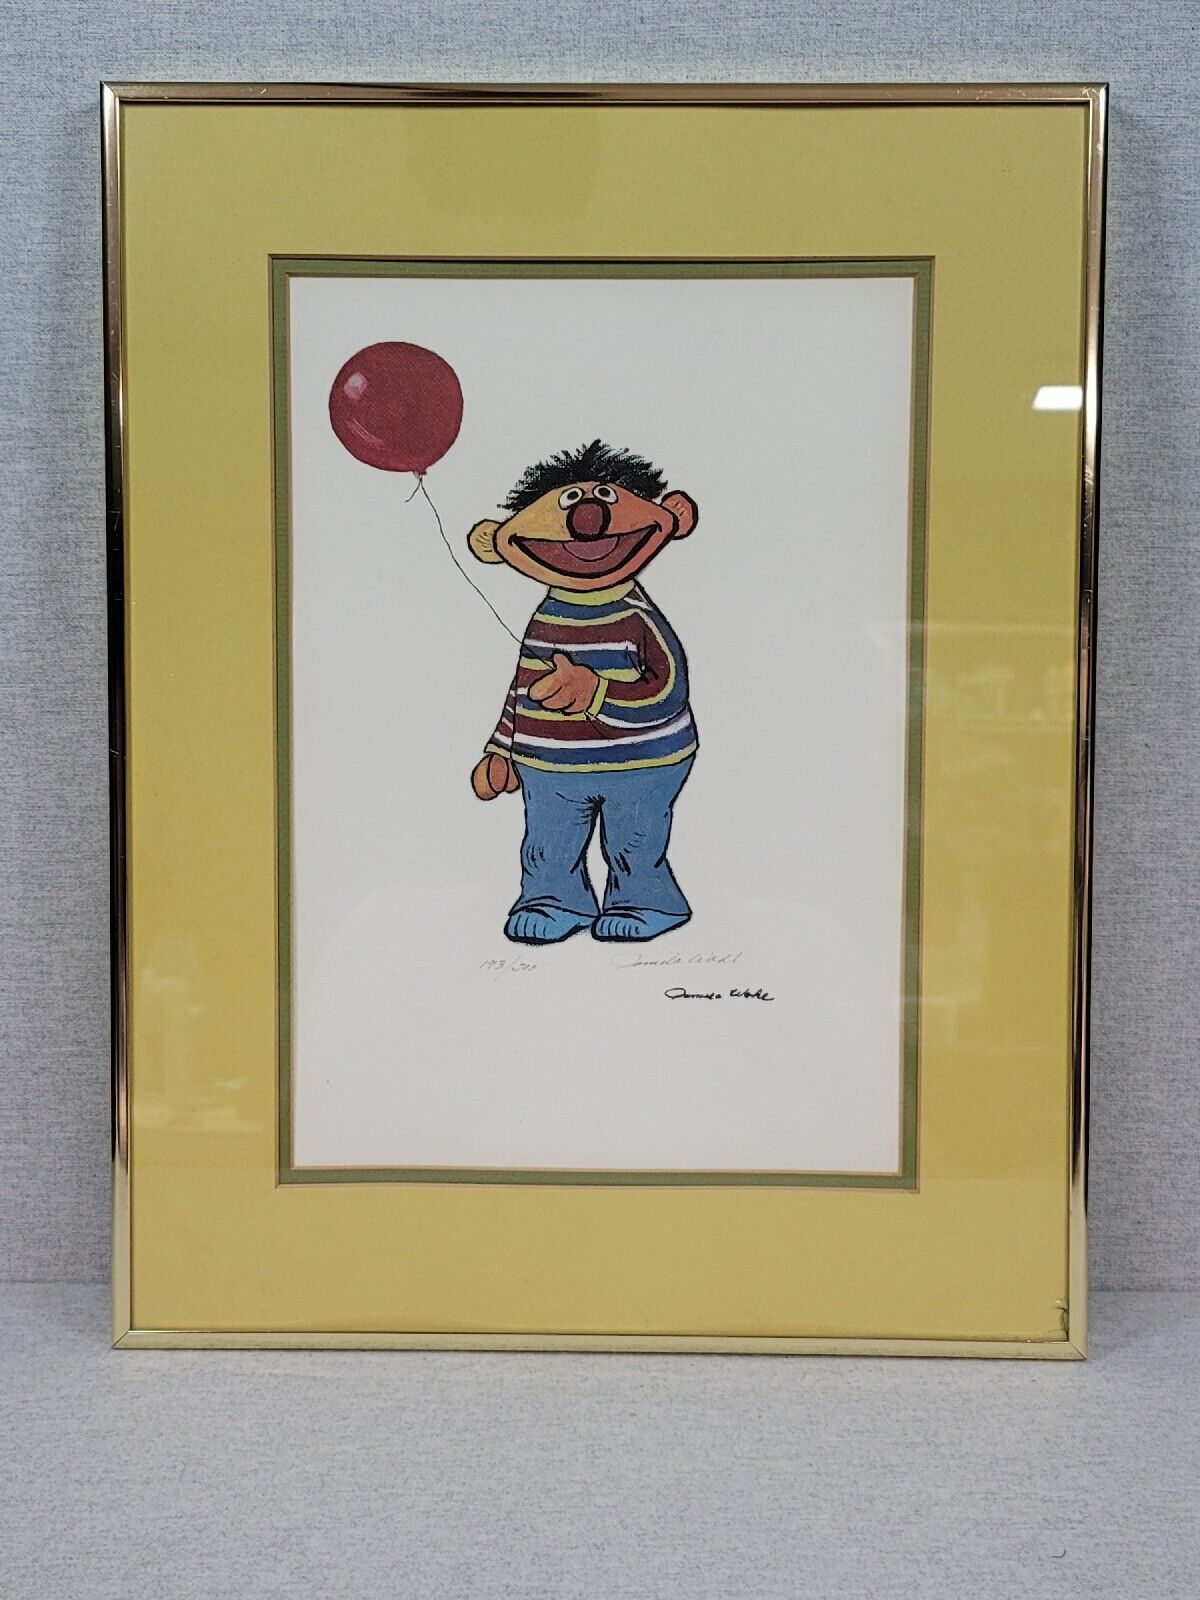 Ernie From Sesame Street Framed Signed Print By Pamela Abdul # 173 of 200